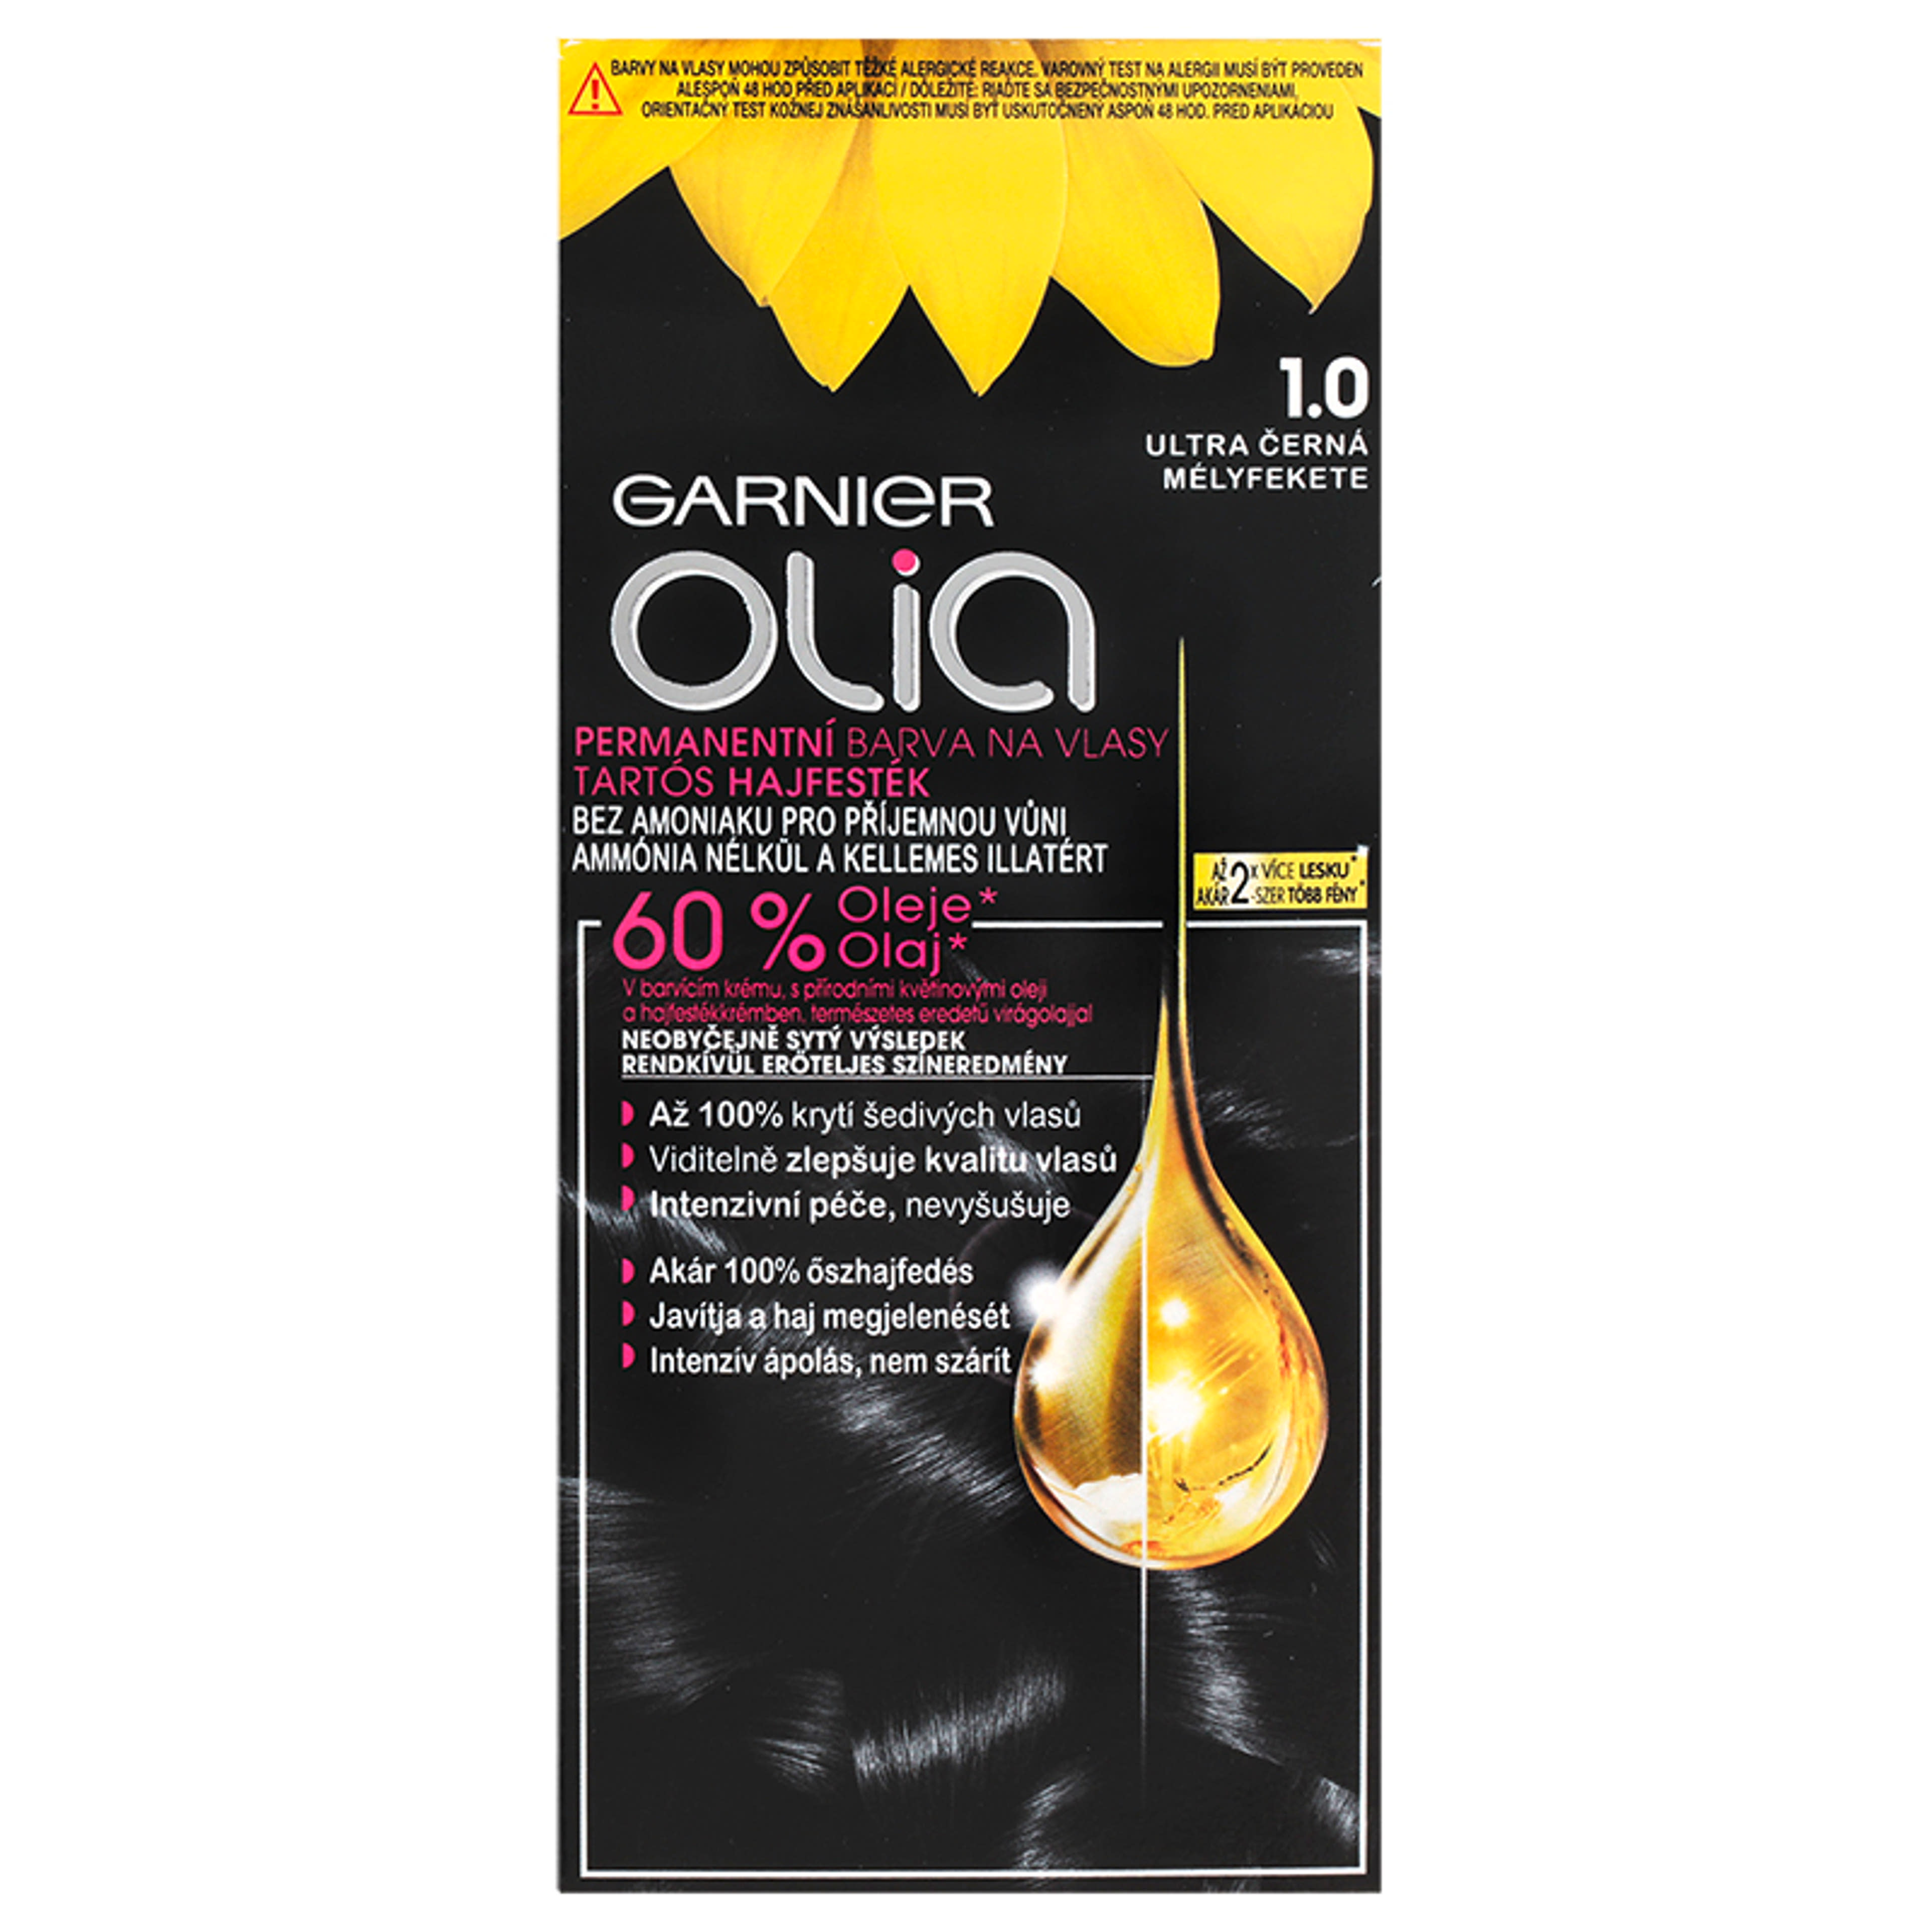 Garnier Olia tartós hajfesték 1.0 Mélyfekete - 1 db-2